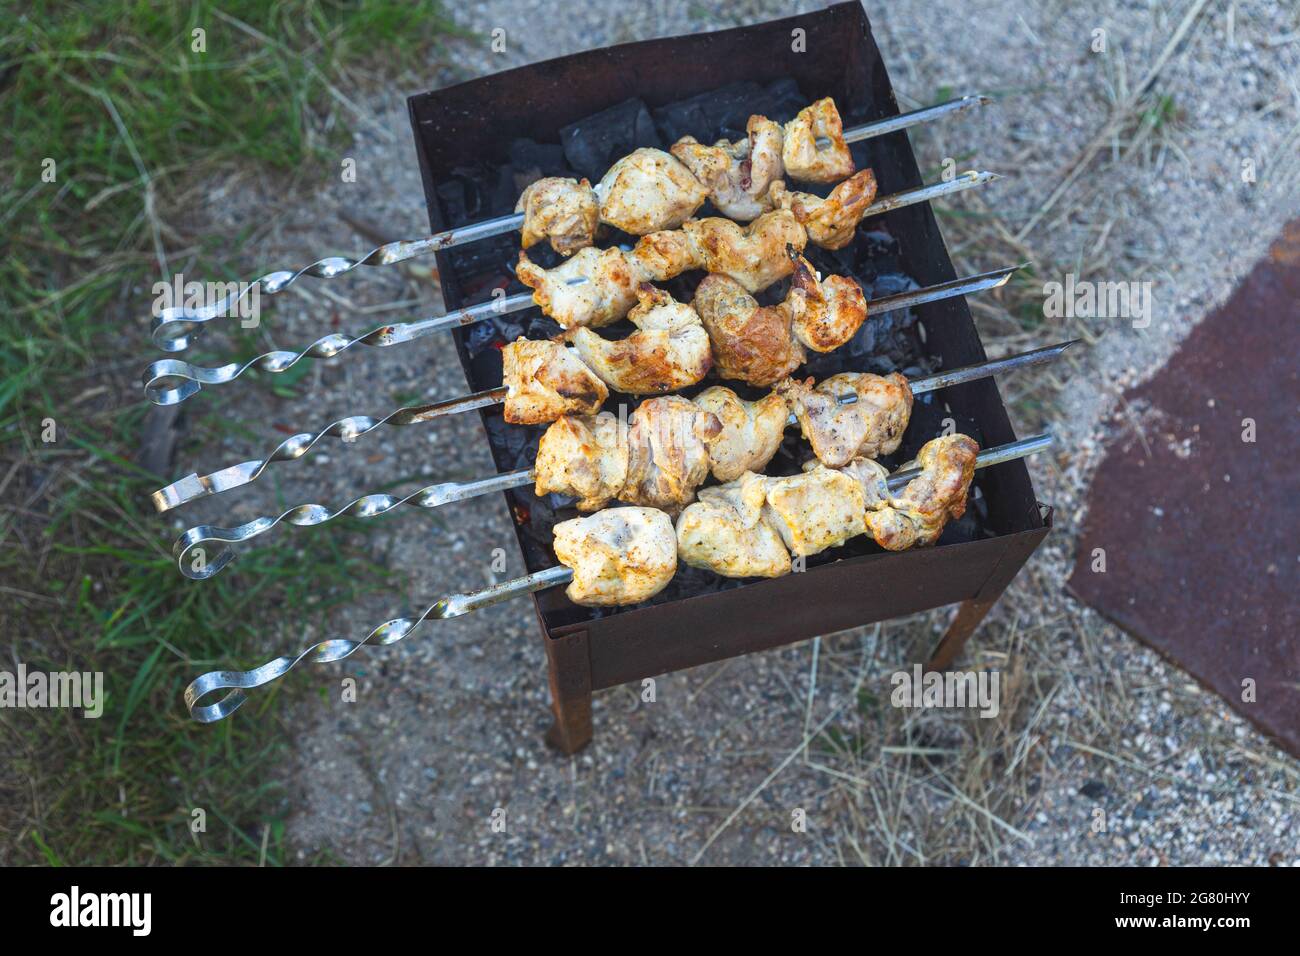 La viande brossée est frite sur charbon de bois sur un grill ou un brazier, vue de dessus. Pique-nique, soirée entre amis et en famille, cuisine sur un feu ouvert à l'avant ou Banque D'Images